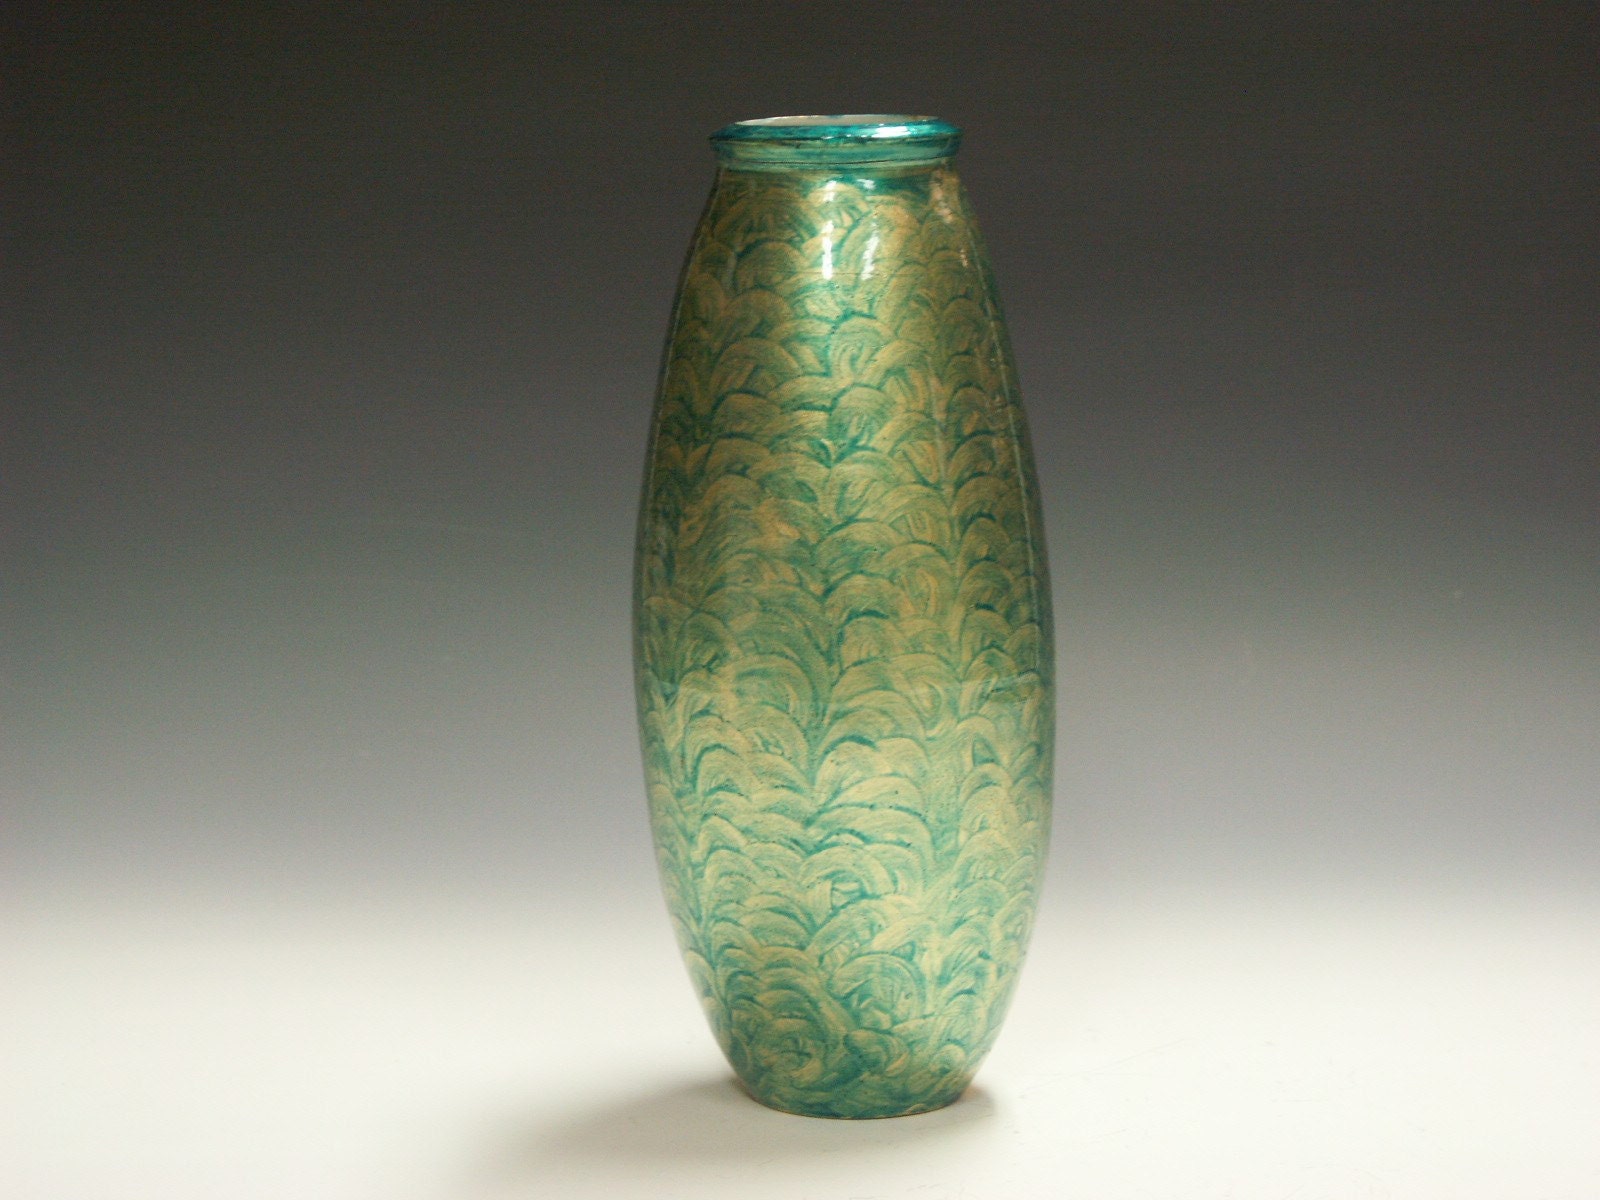 Porcelain guilded decorative vase